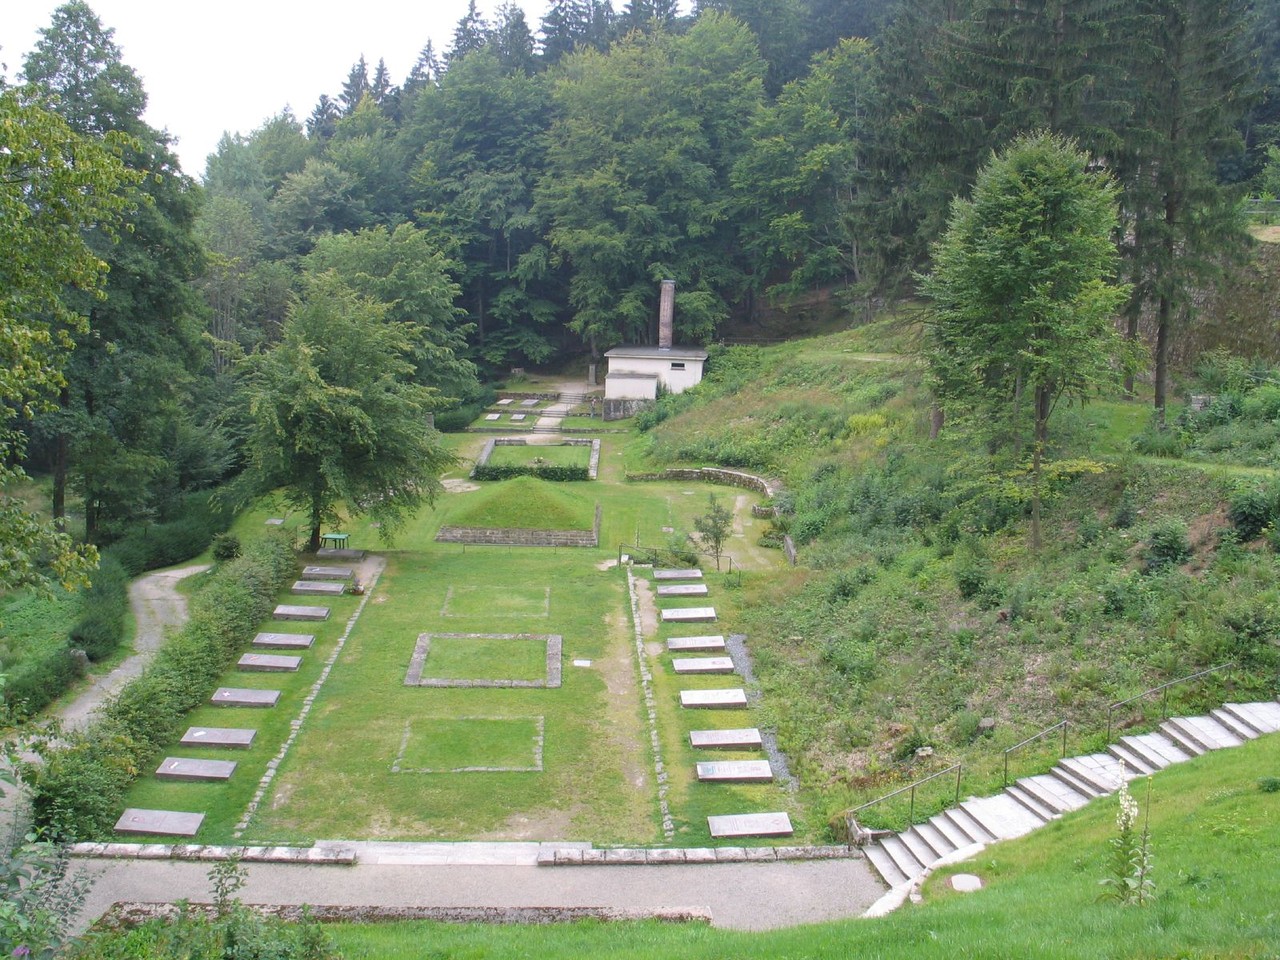 Flossenbürg Concentration Camp